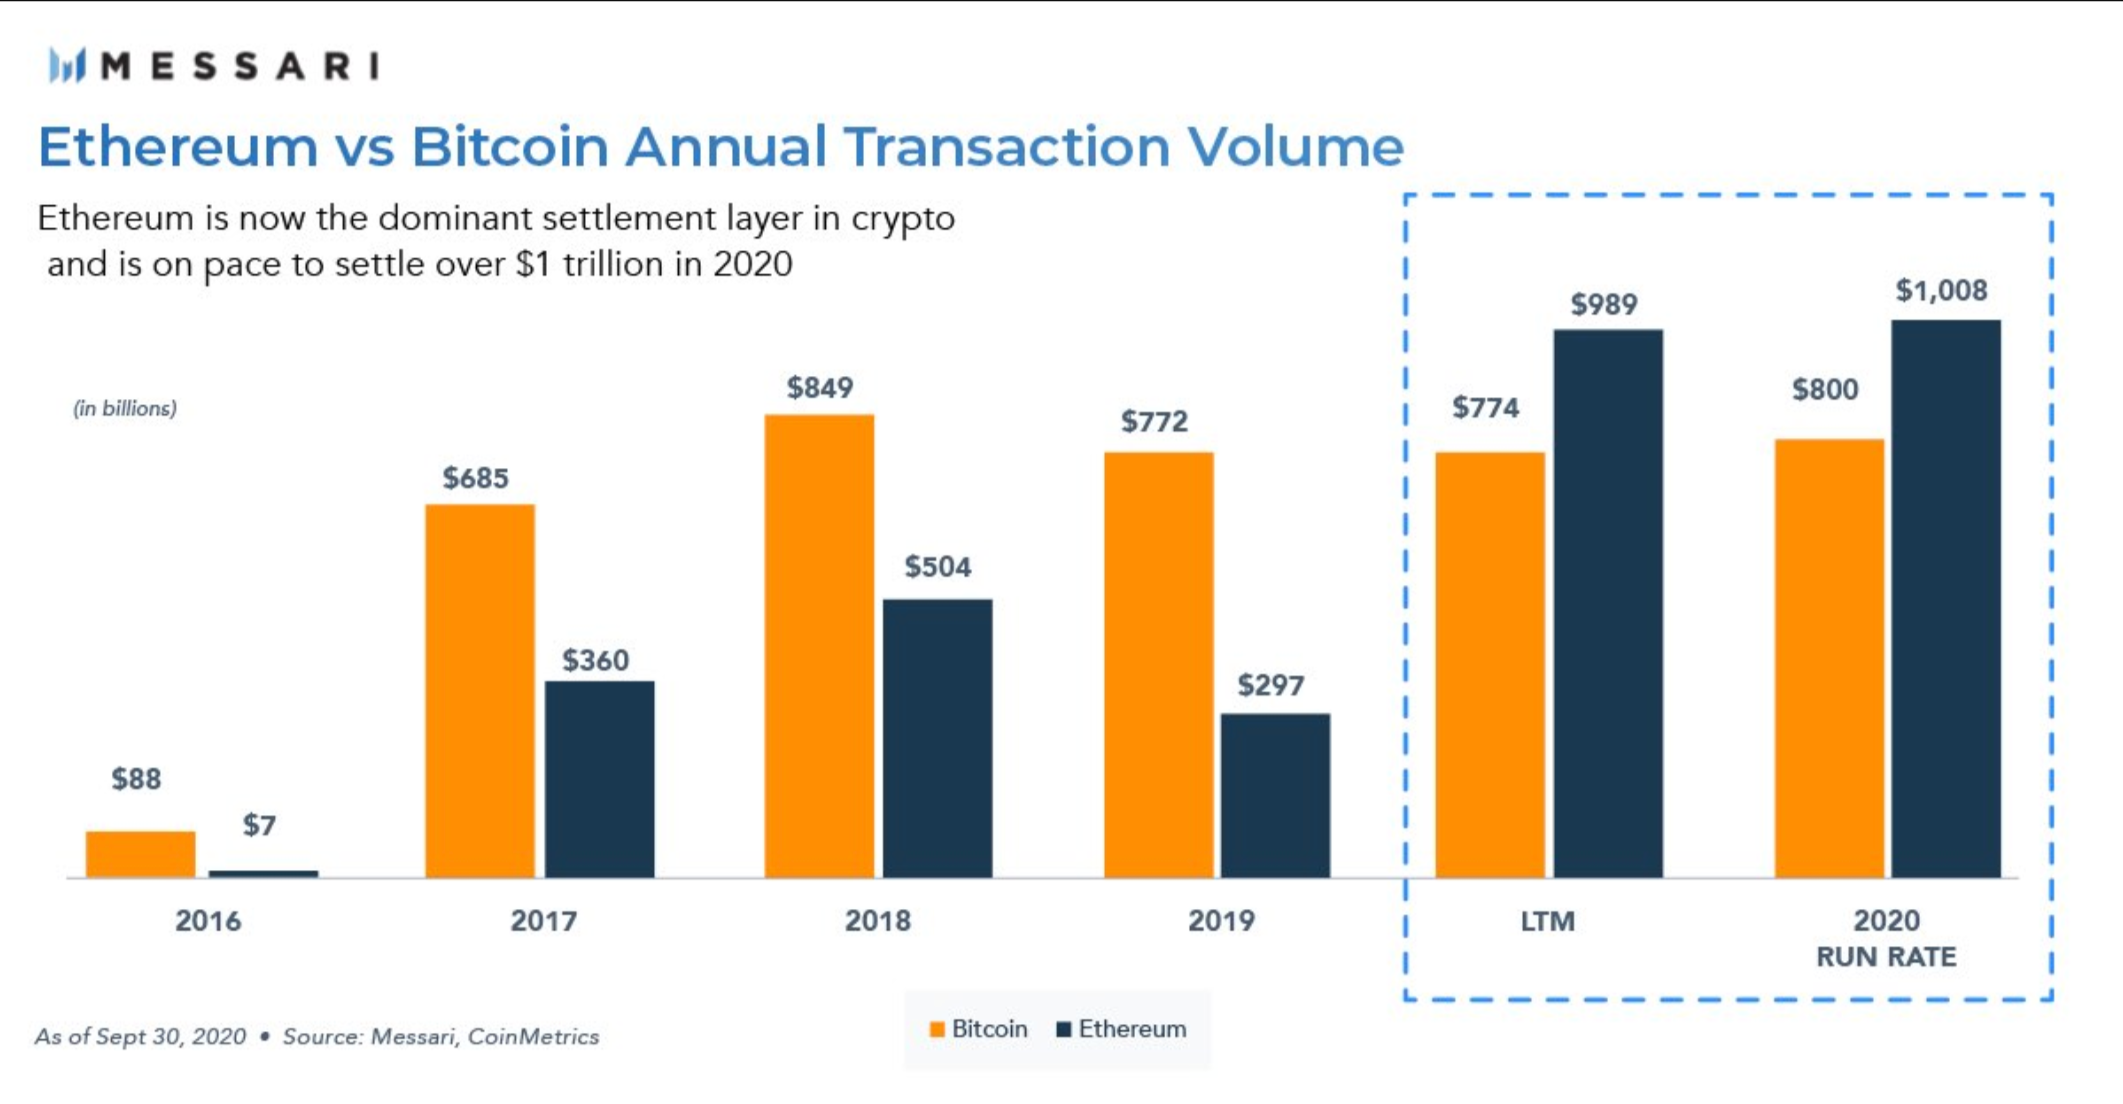 Biểu đồ Messari cho thấy khối lượng giao dịch hàng năm của Ethereum và Bitcoin